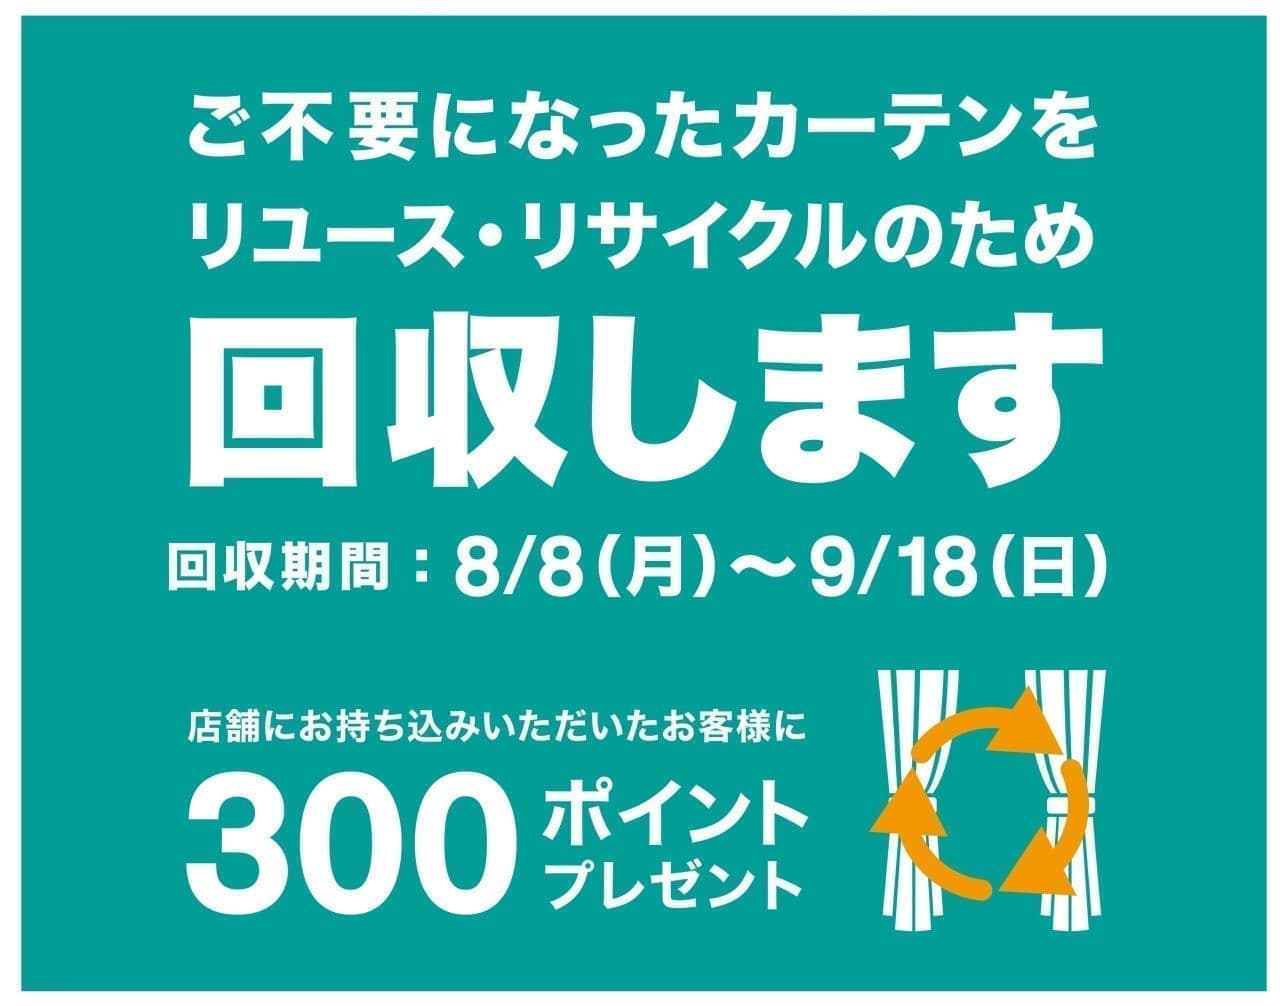 Nitori "Curtain Collection Campaign